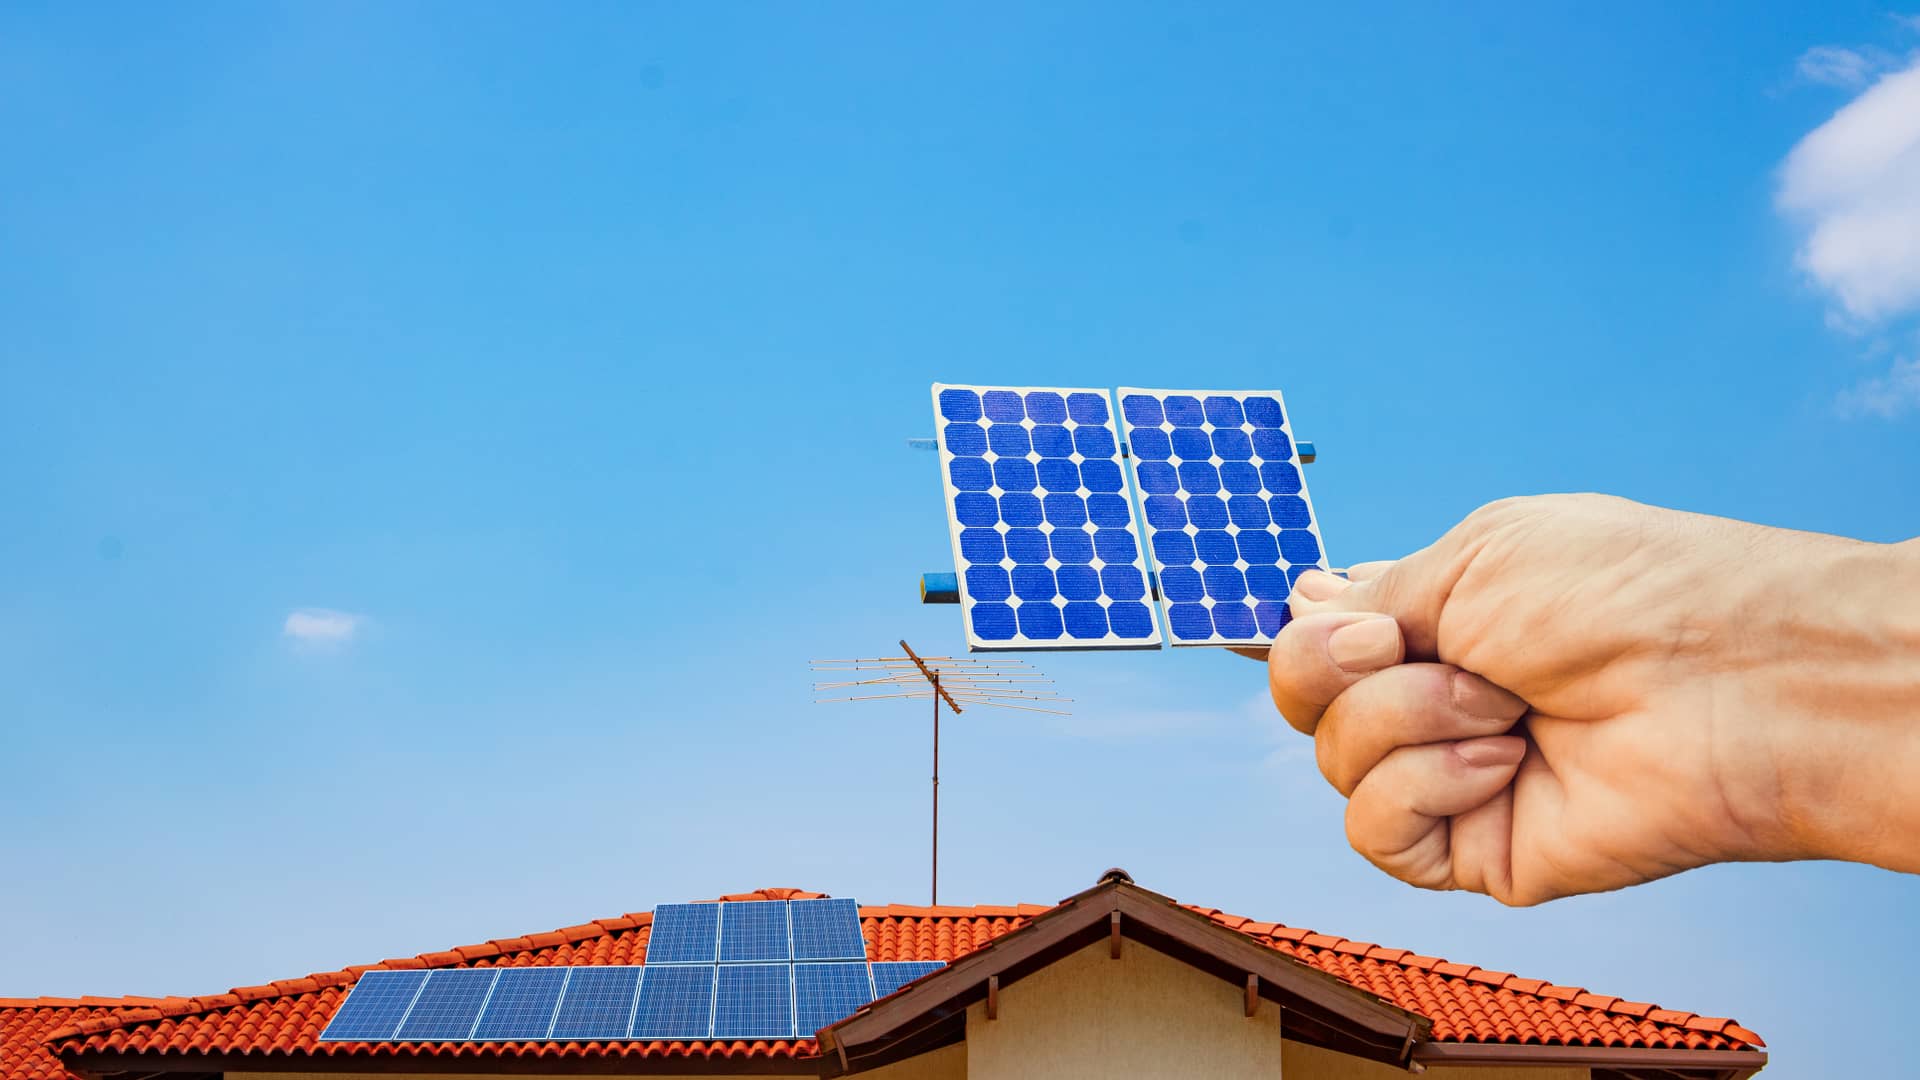 Mano gigante colocando un pequeño panel solar sobre el tejado de una casa representando un completo kit solar con baterías